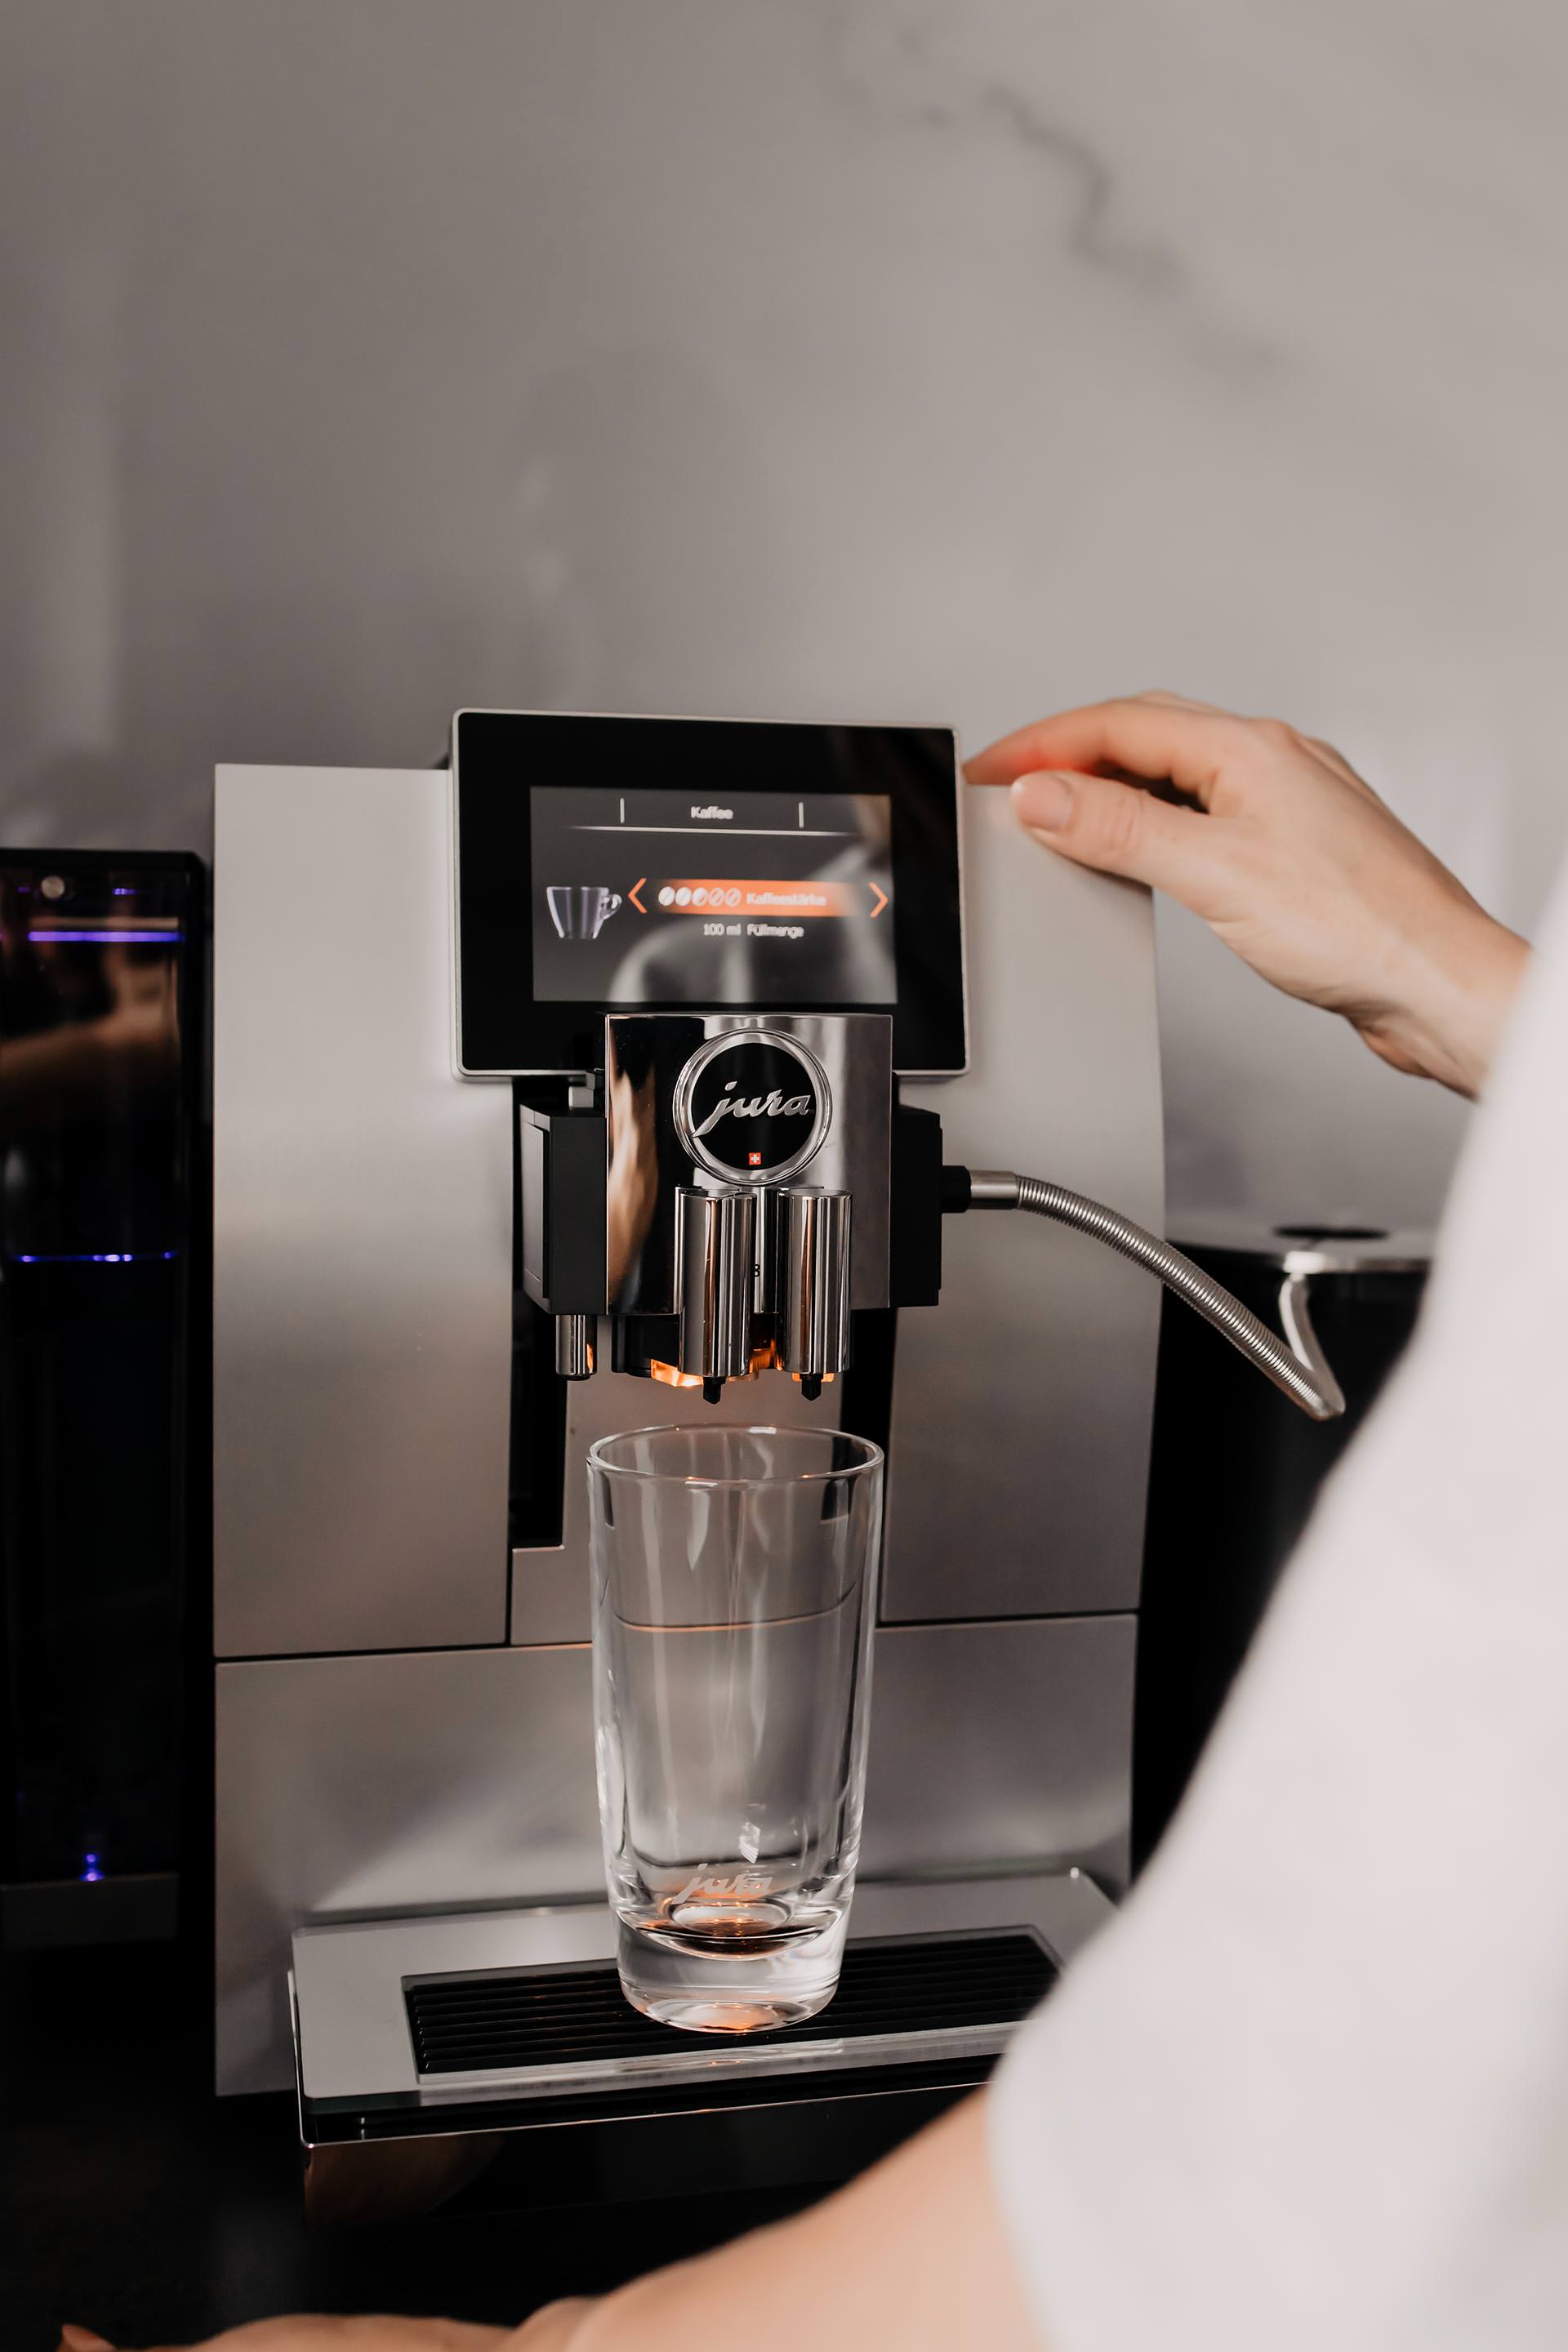 Anzeige. Die JURA Z8 Aluminium ist eingezogen und auf meinem Interiorblog teile ich meine Erfahrungen mit dir. Was guten Kaffee für mich aus macht und warum ein Kaffeevollautomat die beste Wahl für deine Küche ist, liest du jetzt online. www.whoismocca.com #jura #kaffeevollautomat #interiorblog